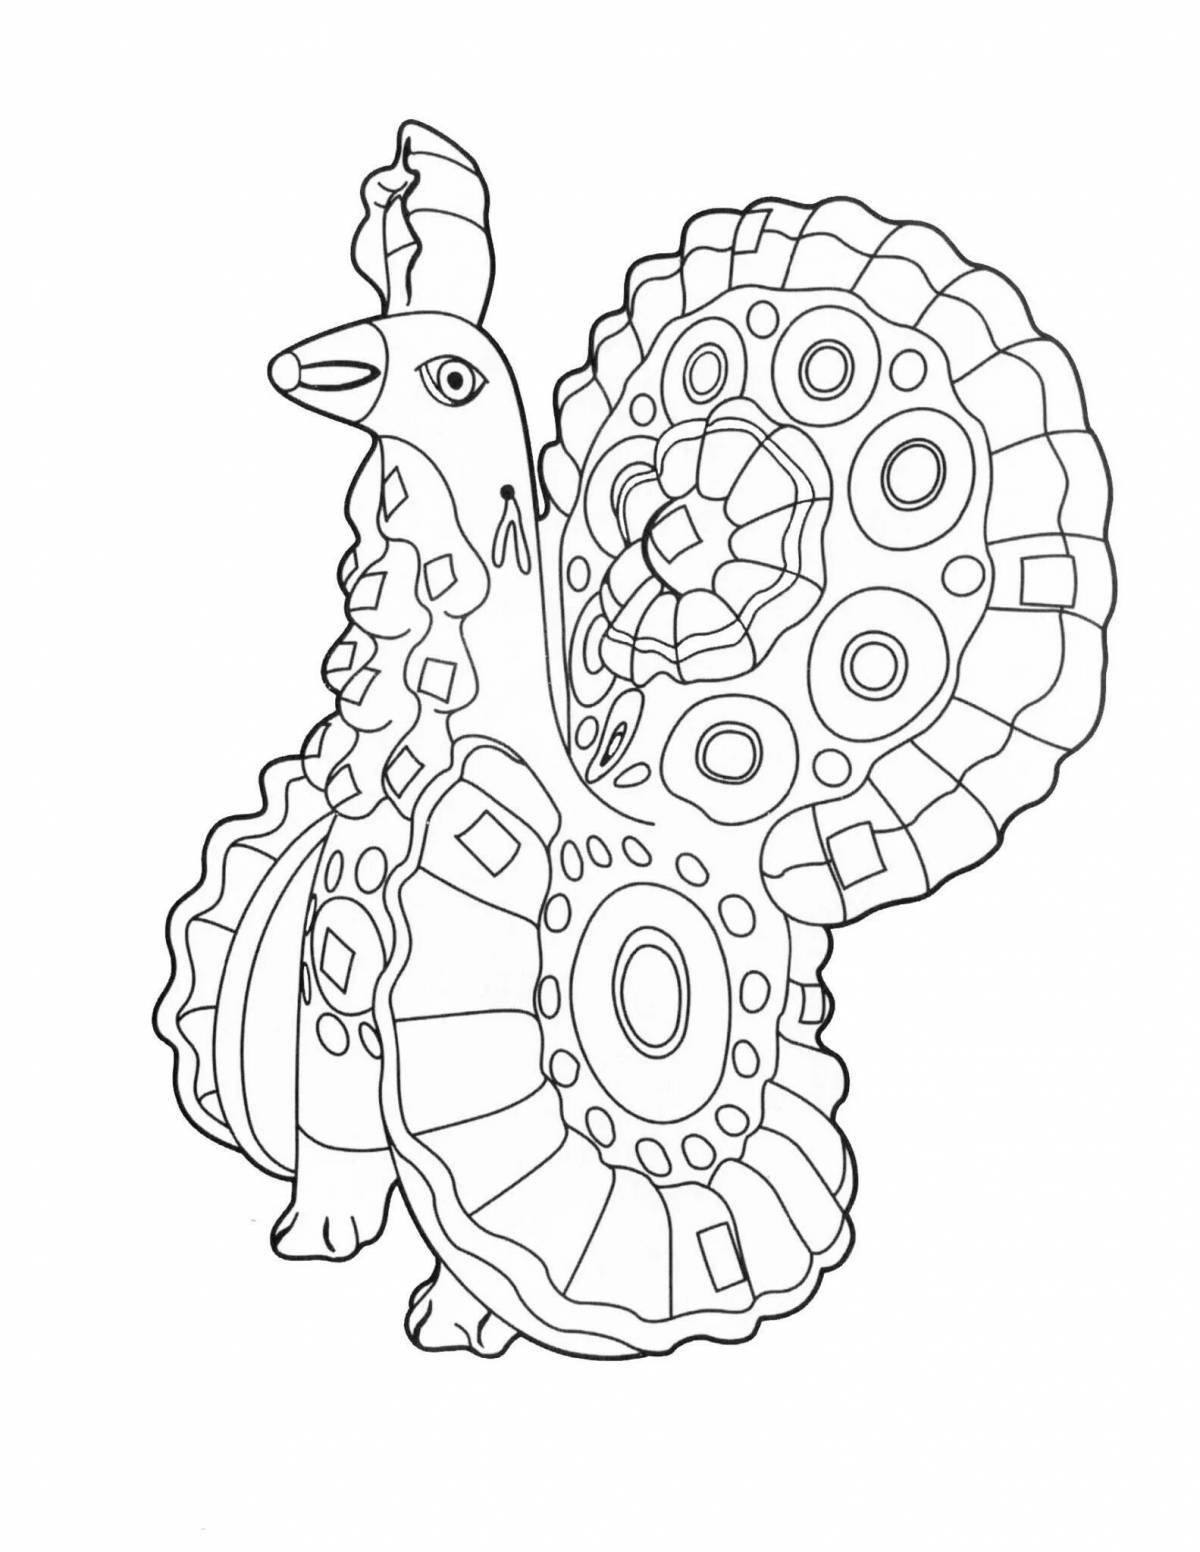 Terrific pattern of the Dymkovo cockerel toy